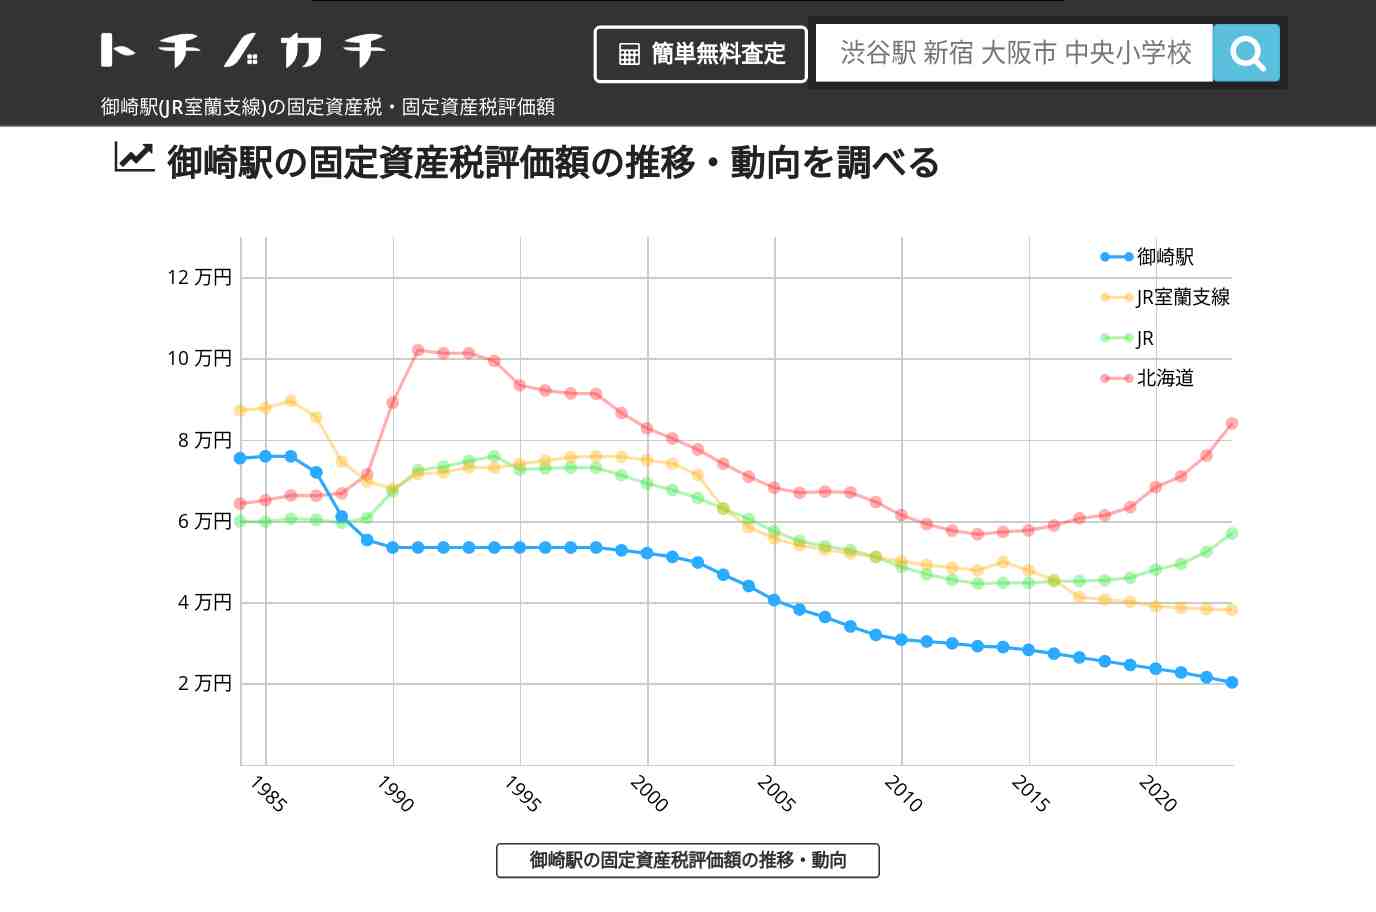 御崎駅(JR室蘭支線)の固定資産税・固定資産税評価額 | トチノカチ